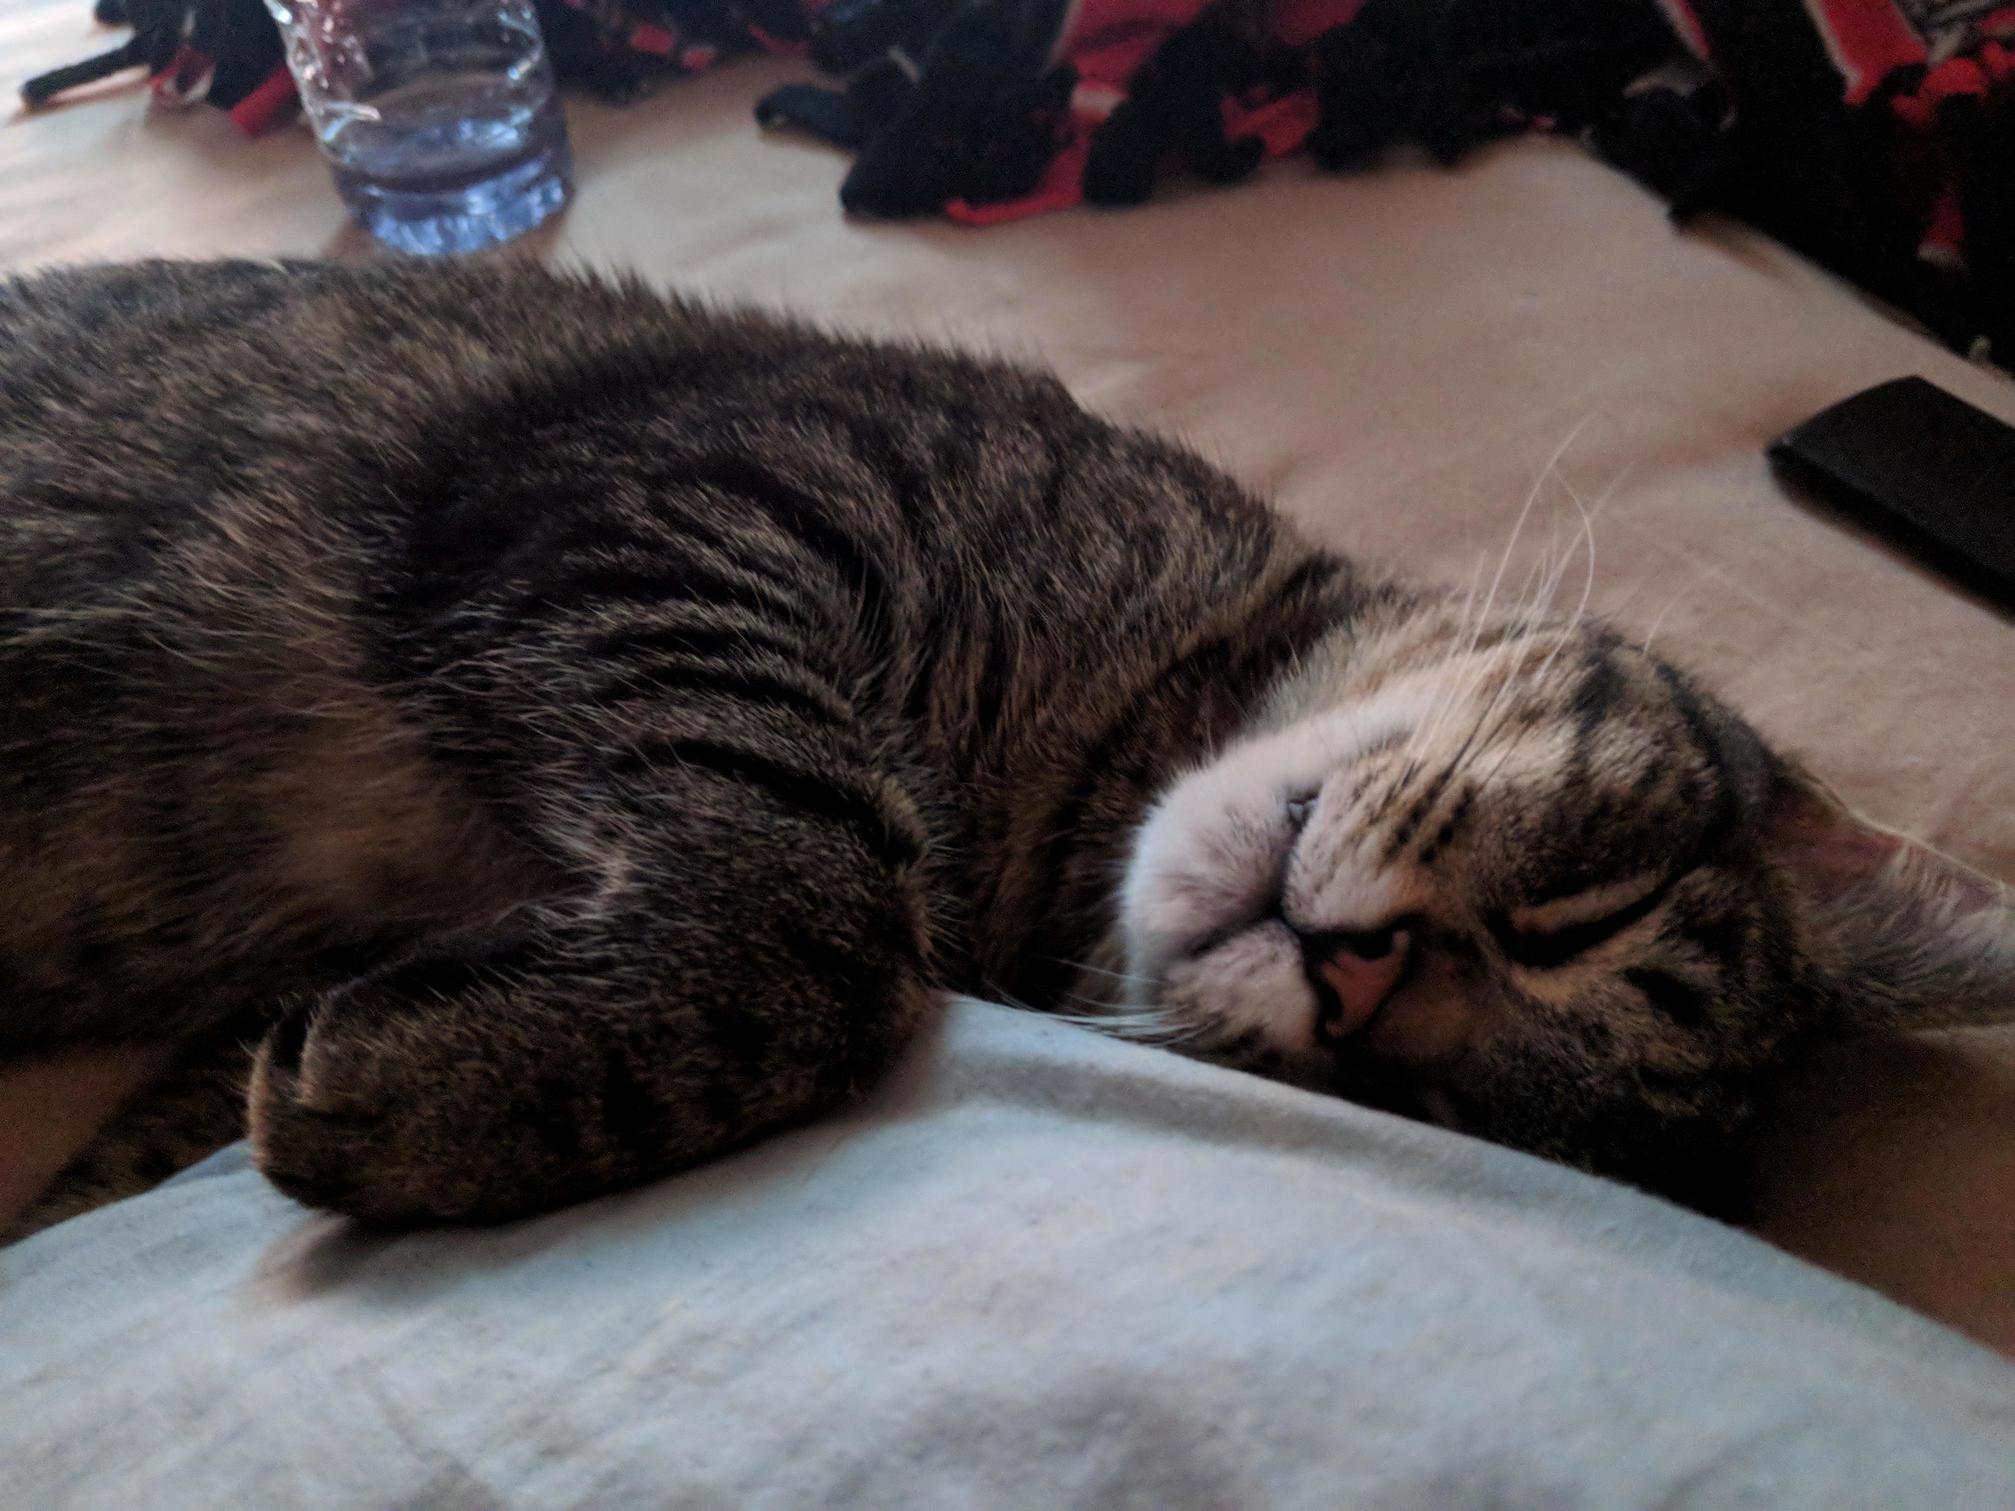 Cat nap after a long day of kitten destruction